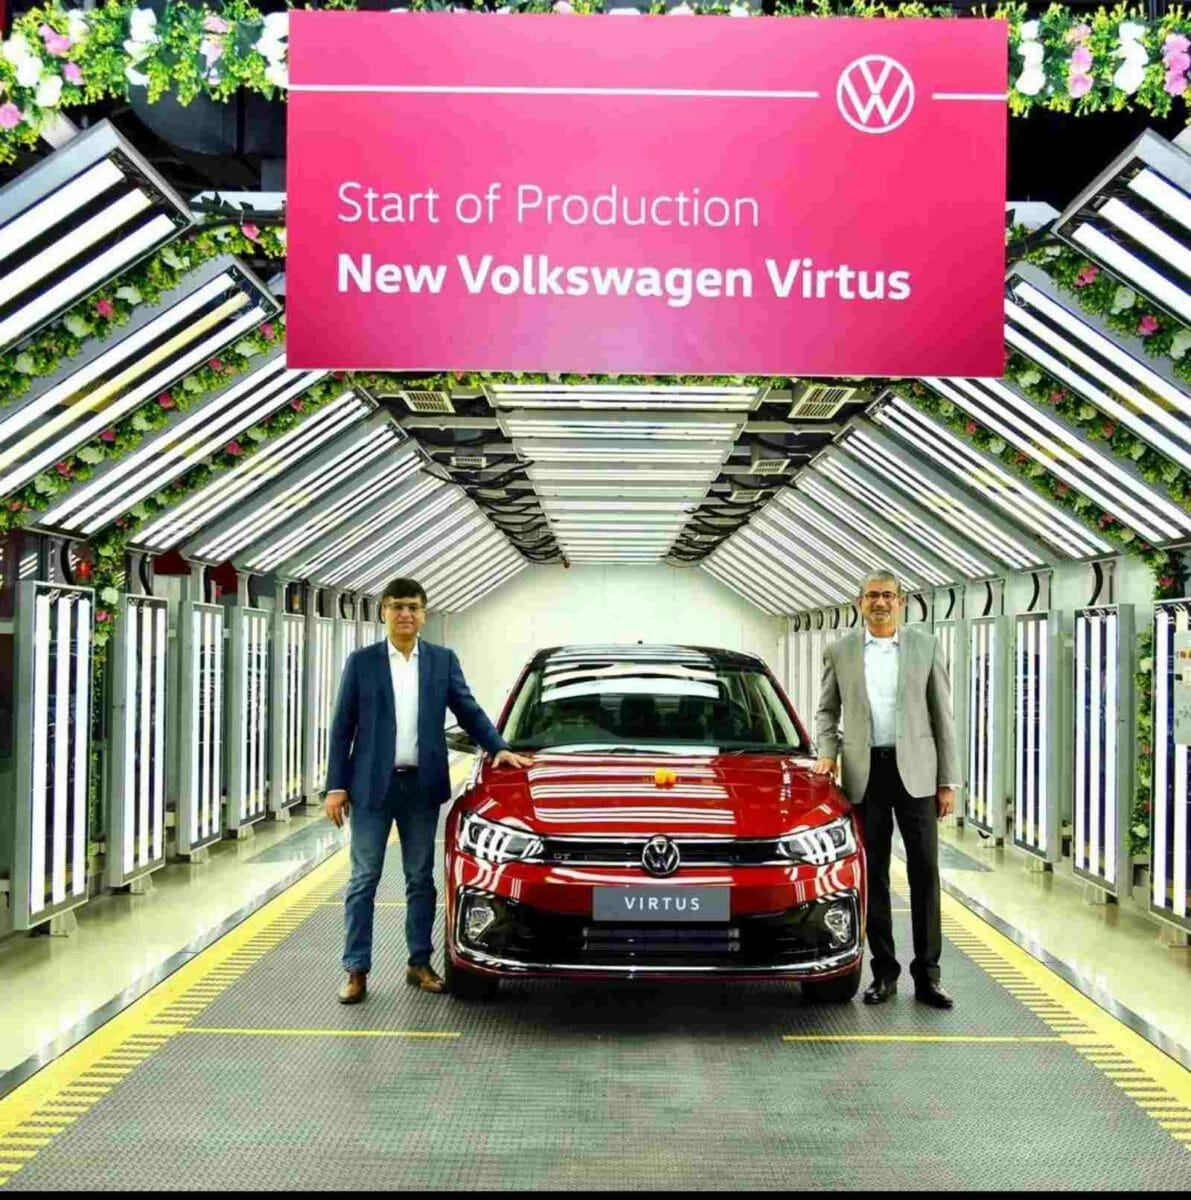 VW Virtus production commences